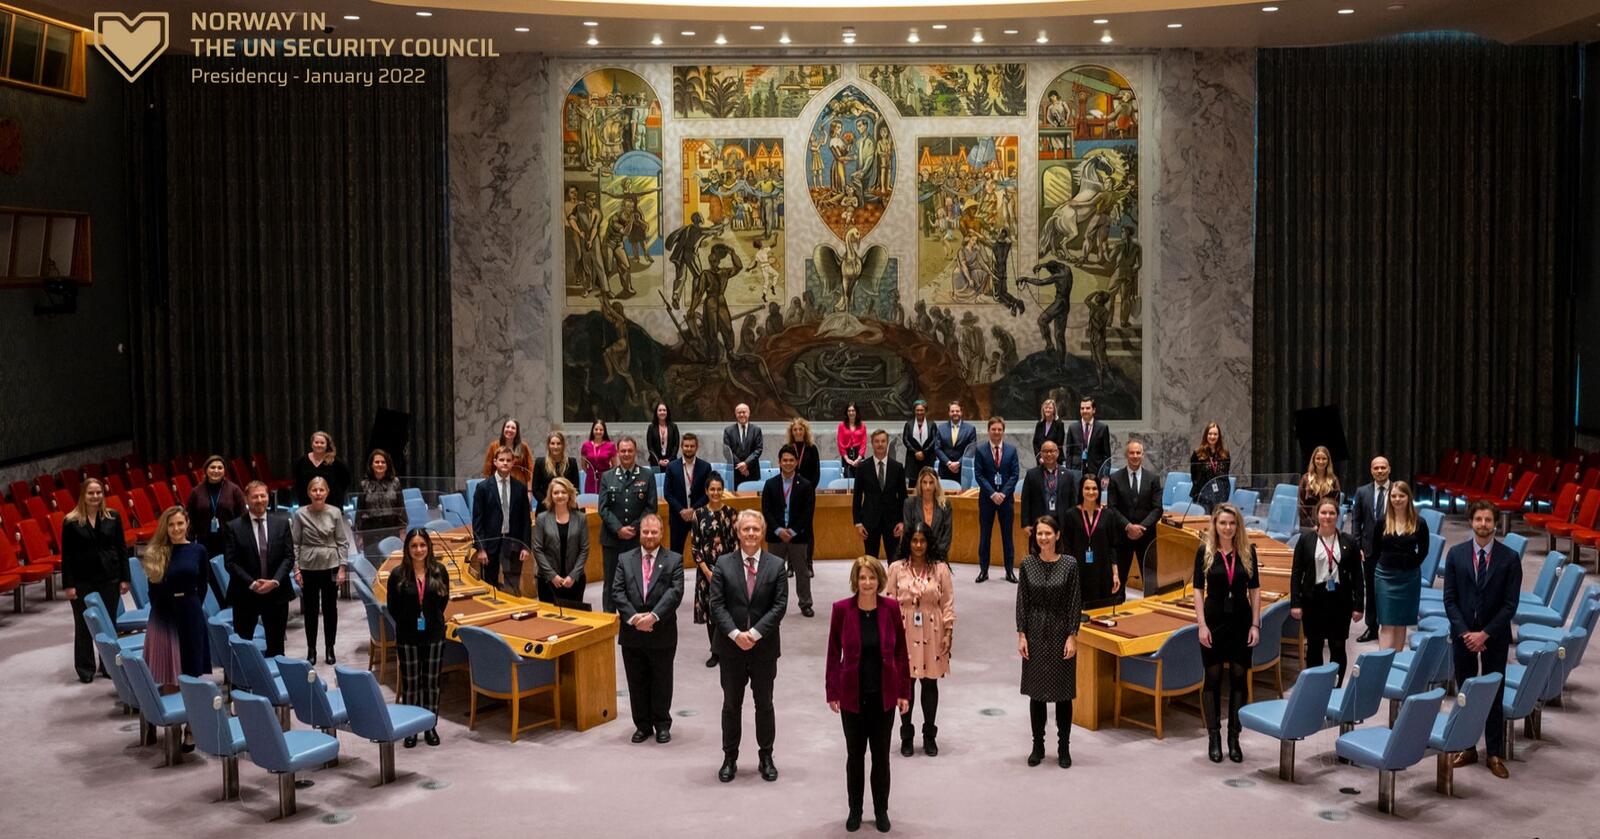 G35 i FN: I symbolsk gave til de andre landene i FNs sikkerhetsråd valgte Norge Gubrandsdalsosten, da Norges FN-ambassadør Mona Juhl tok over presidentskapet i New York. (Foto: Mark Garten/FN)